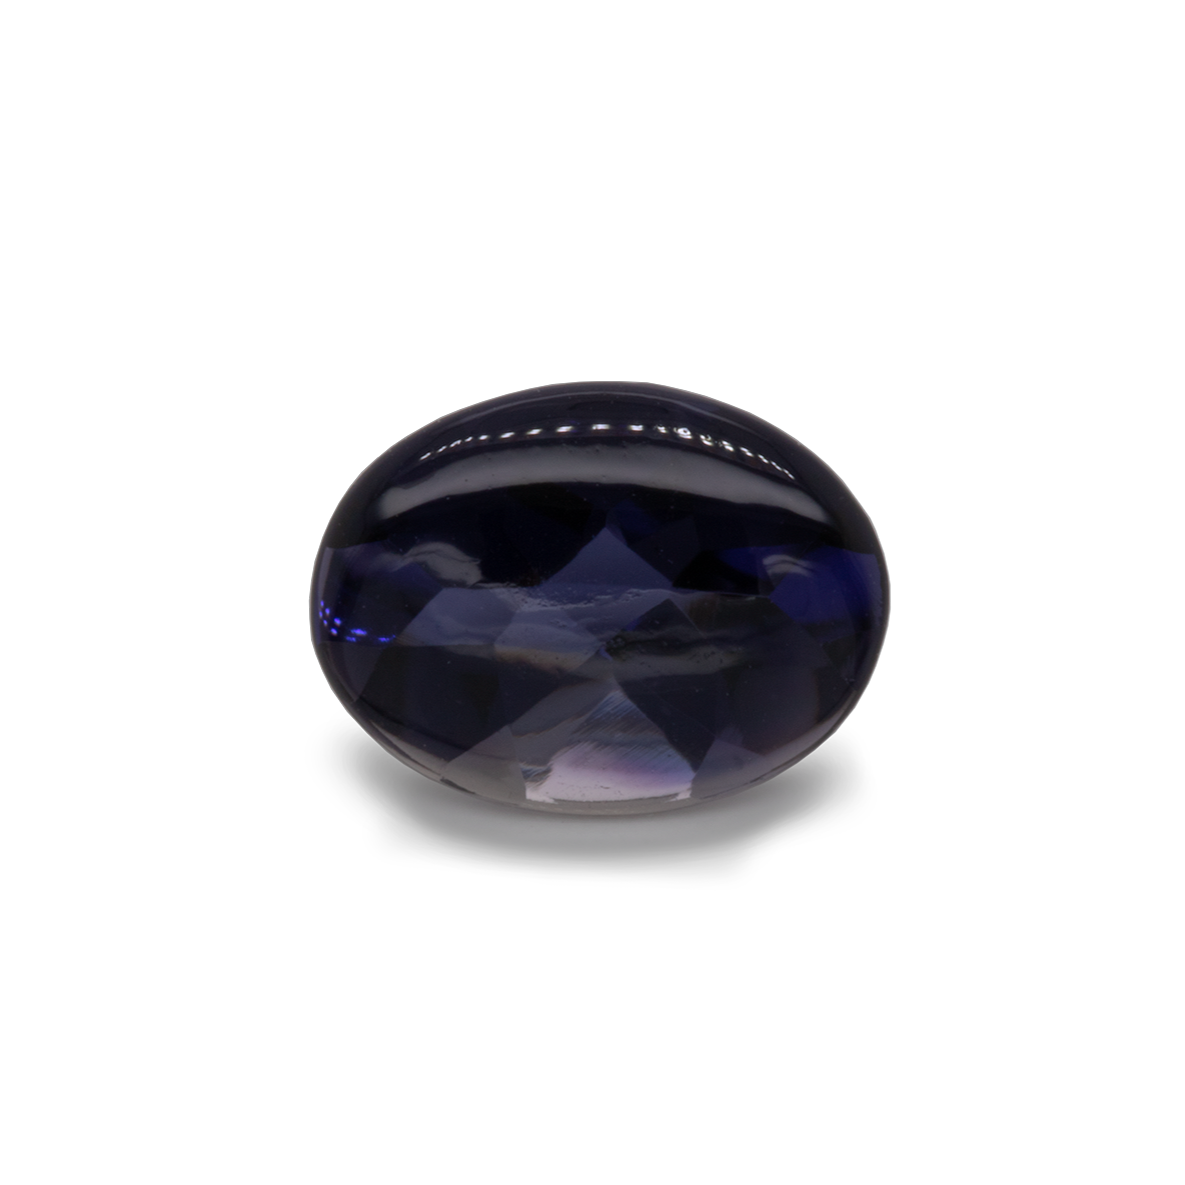 Iolith - lila/blau, oval, 8x6 mm, 0,82-0,99 cts, Nr. IOL90001